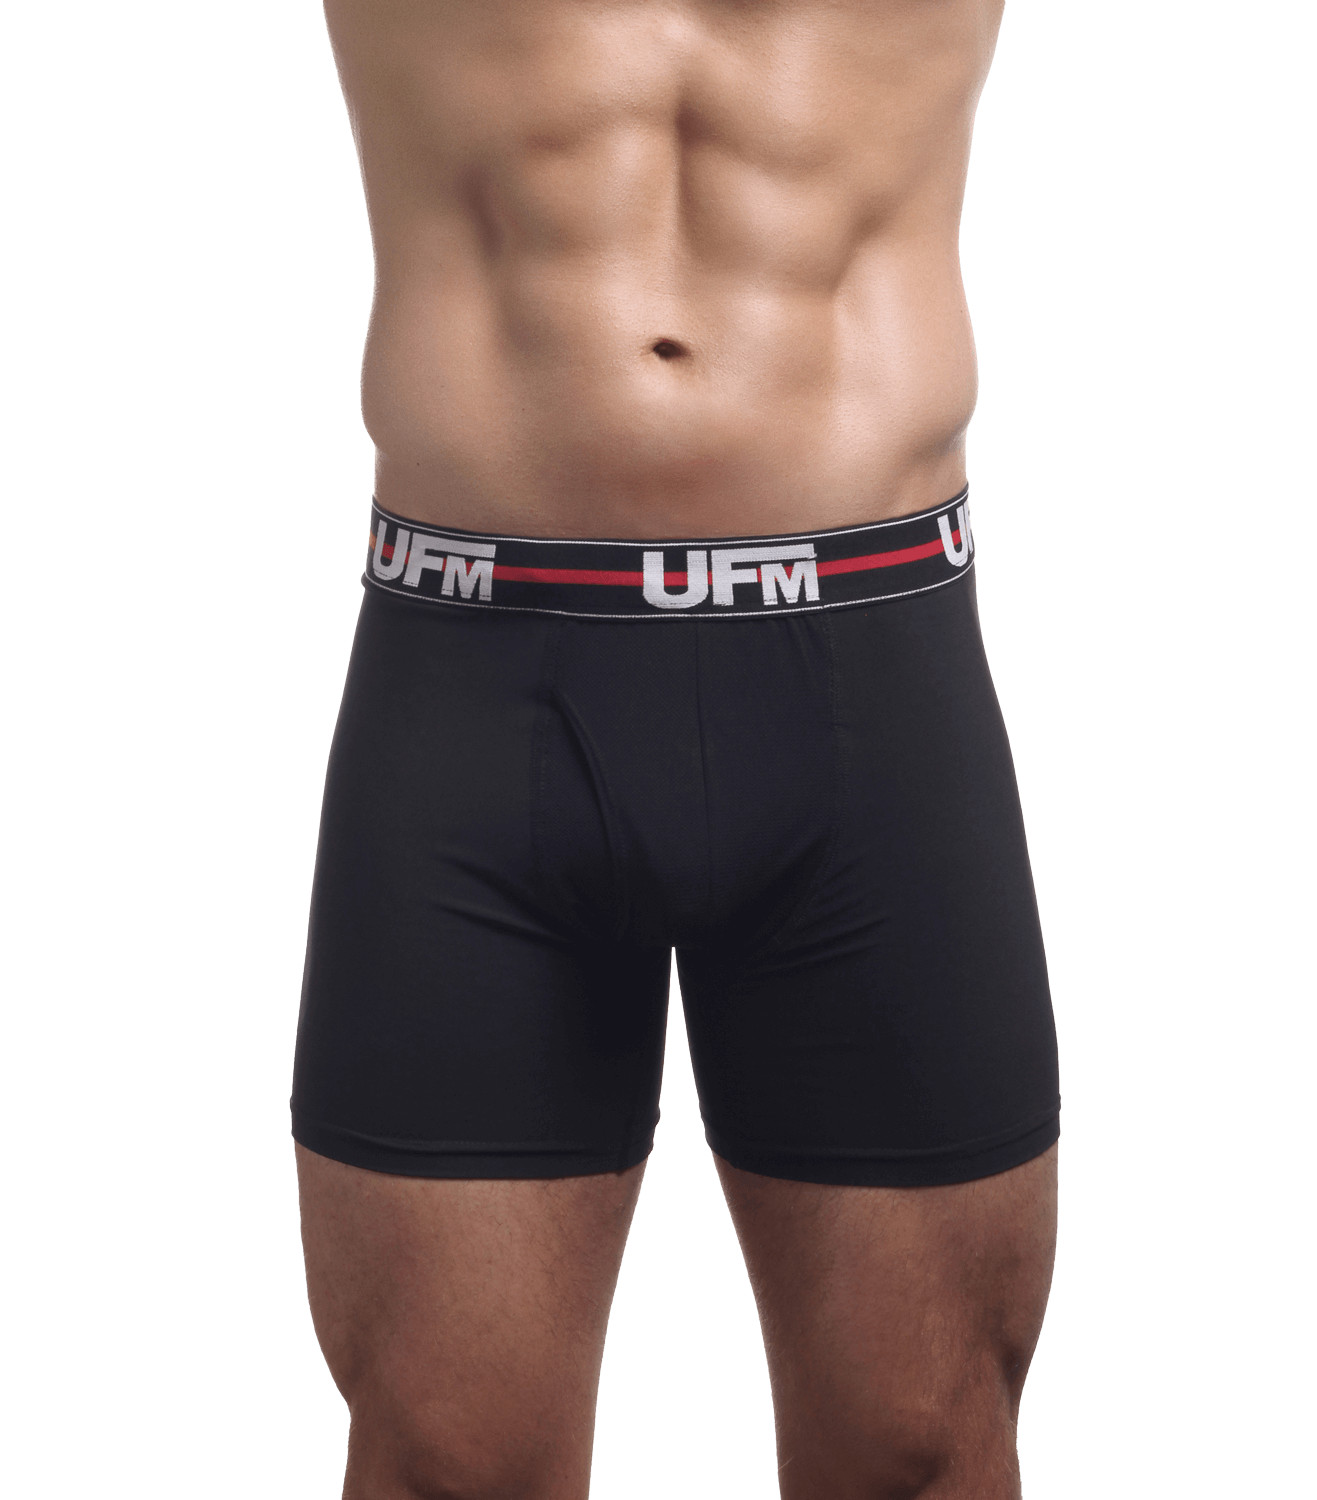 gen 1 sport boxer brief front 2 underwear for men